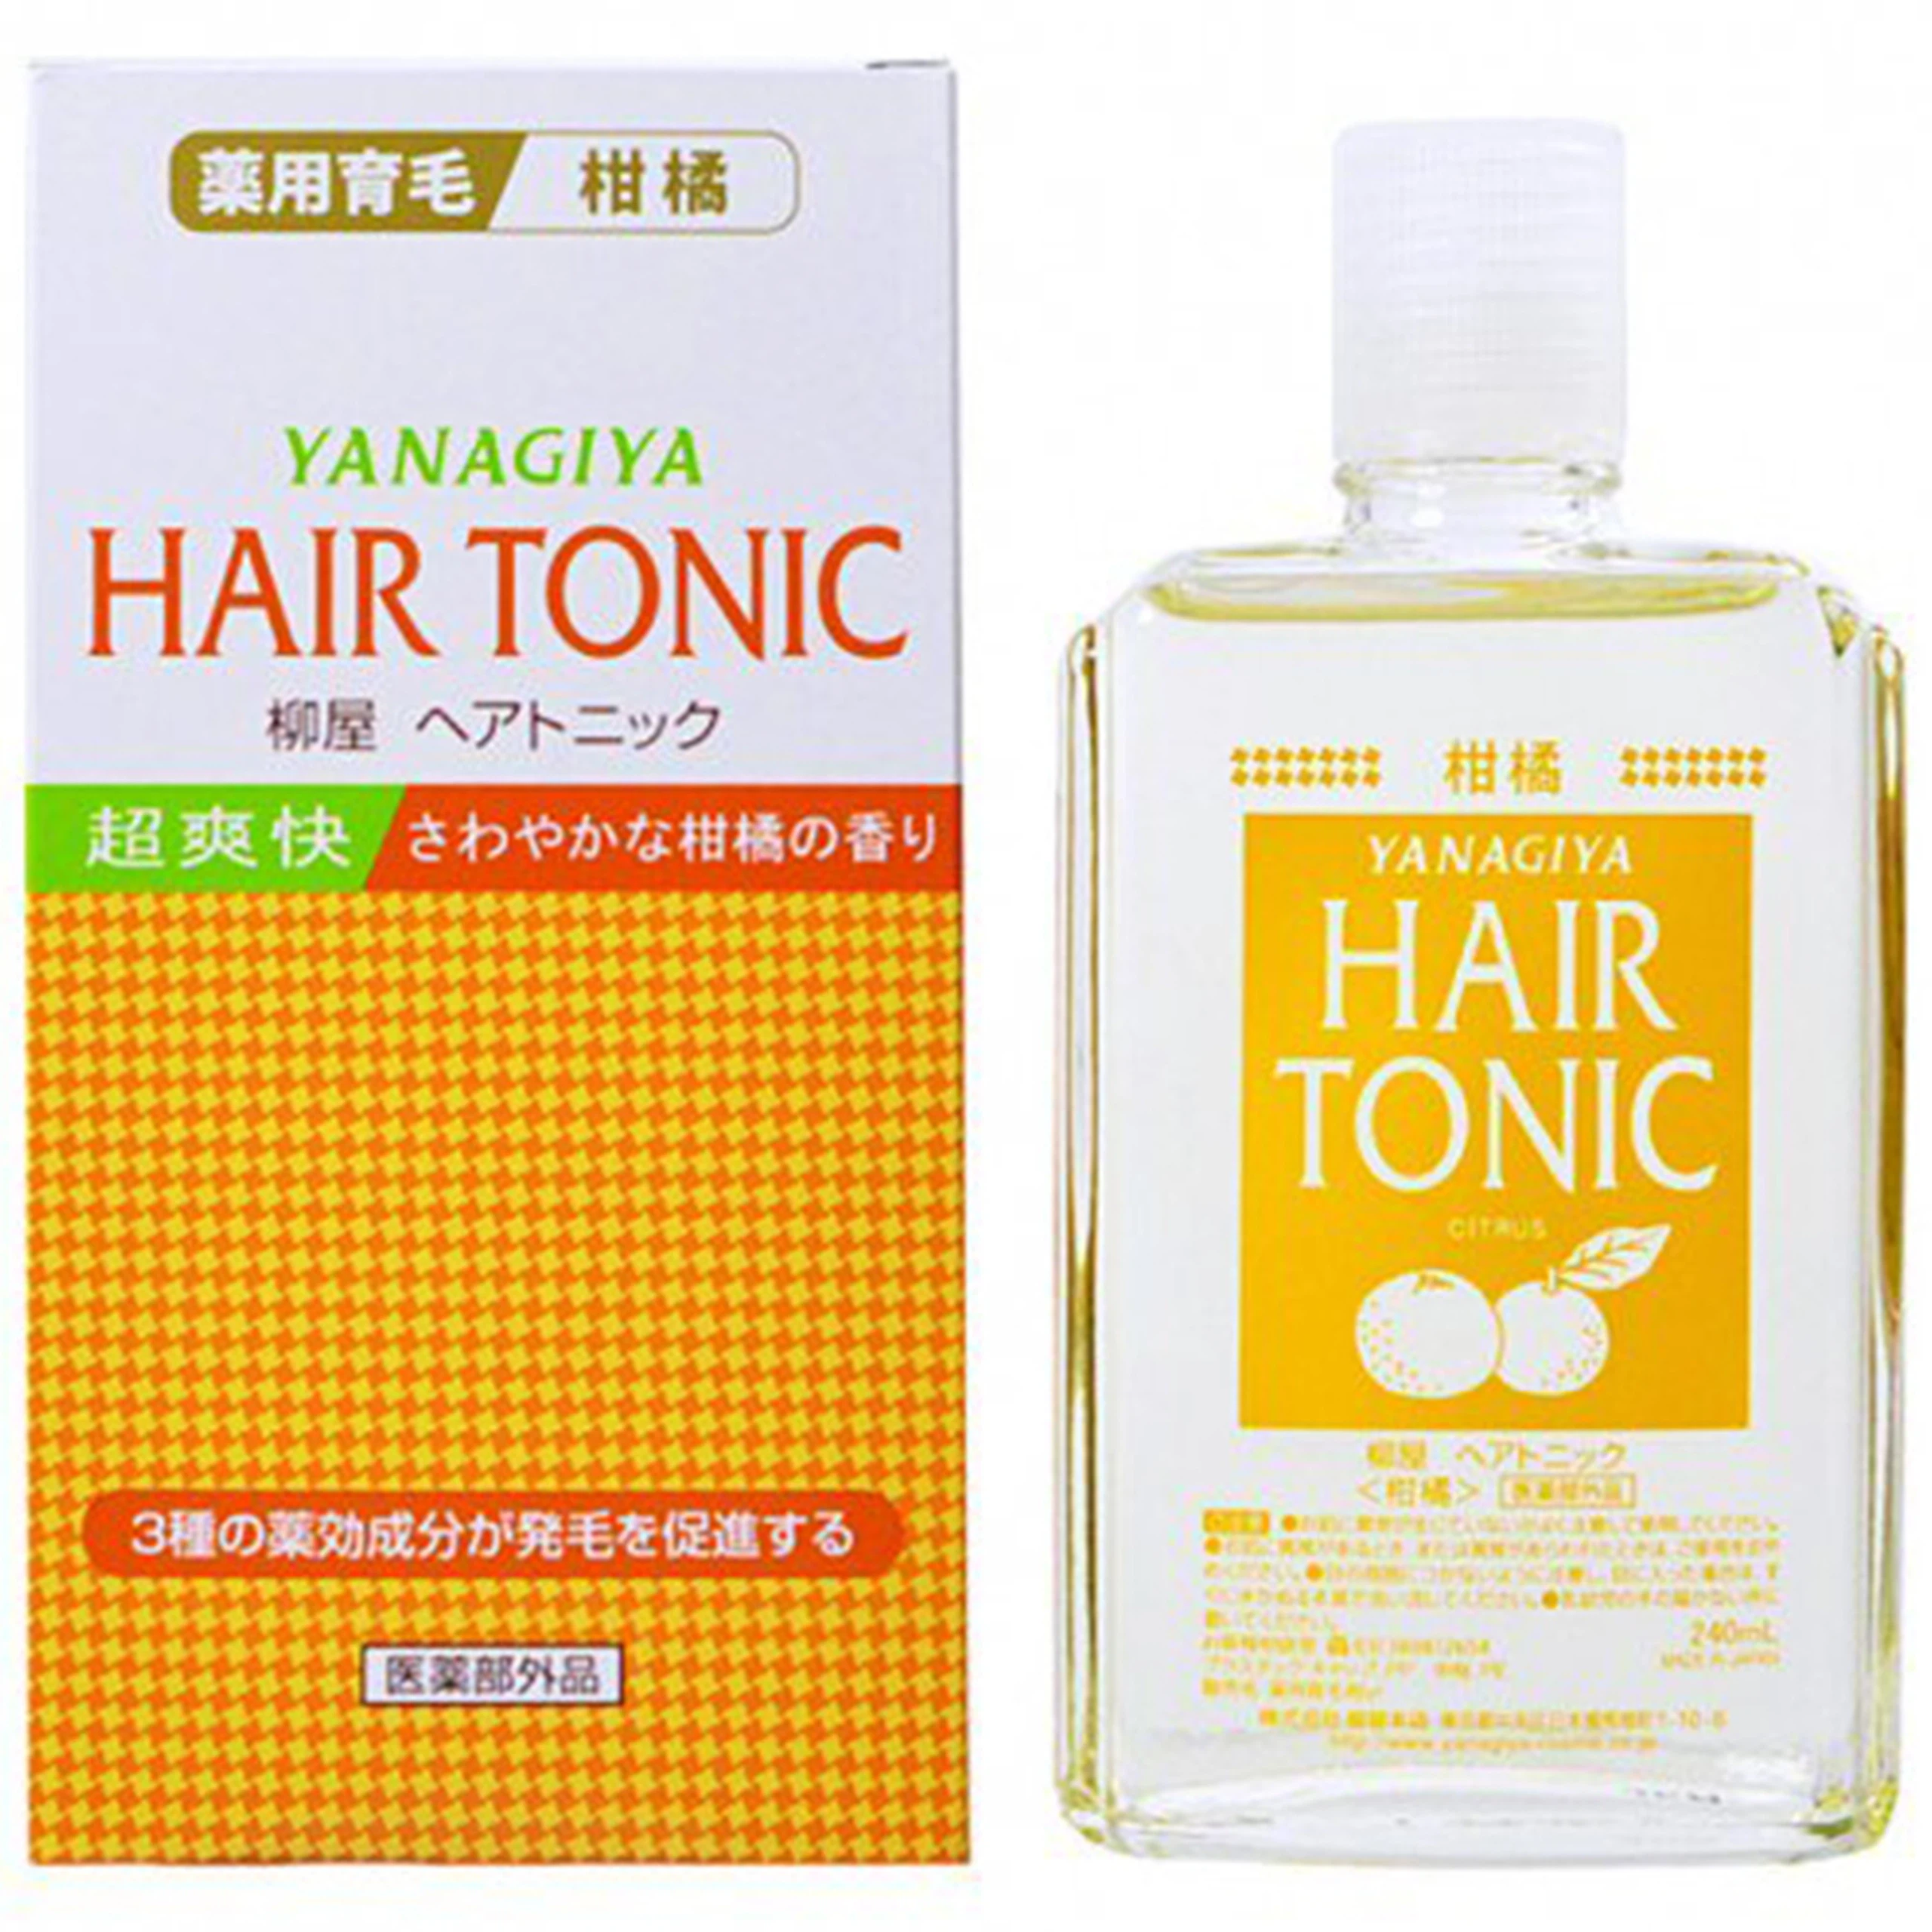 Dưỡng tóc Yanagiya Hair Tonic hương bưởi ngăn ngừa tóc gãy rụng, thưa mỏng và gàu (240ml)